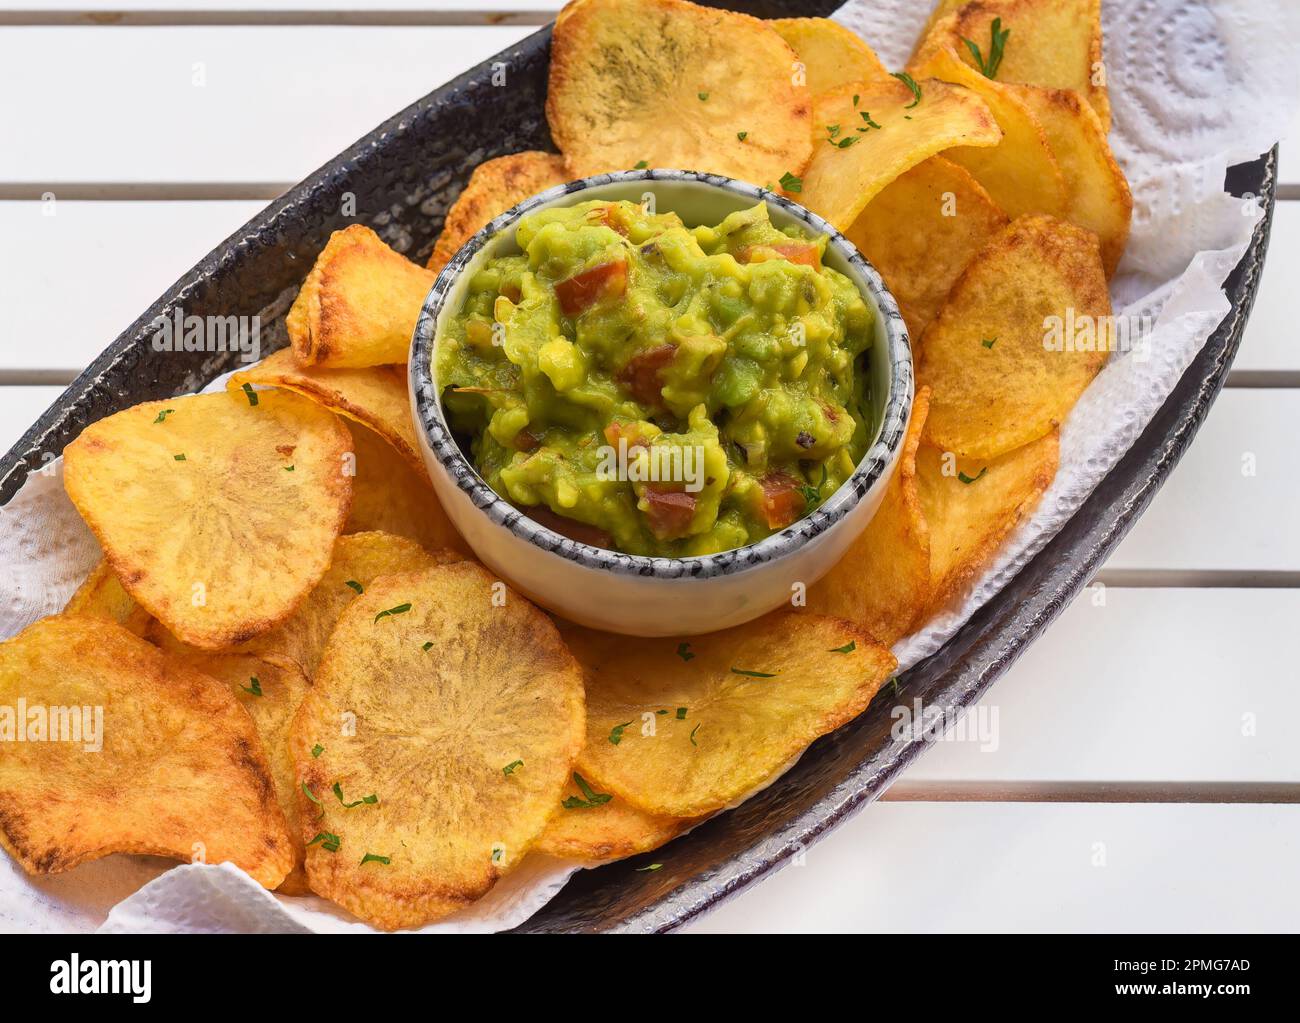 Patatine fatte in casa con salsa vegetariana a base di avocado e verdure su un tavolo di legno bianco Foto Stock